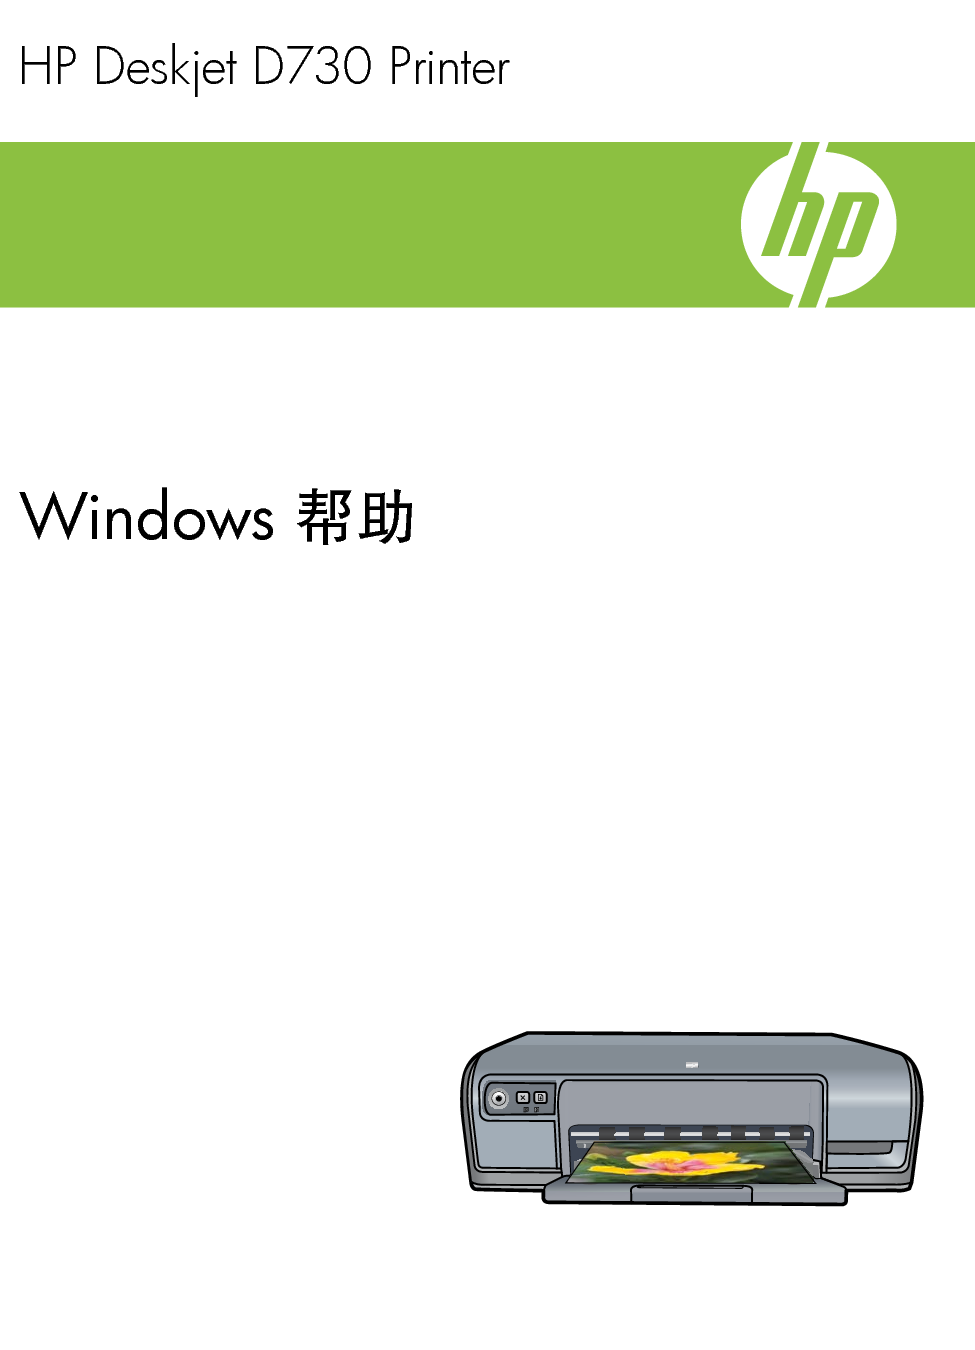 惠普 HP DeskJet D730 Windows 帮助 封面